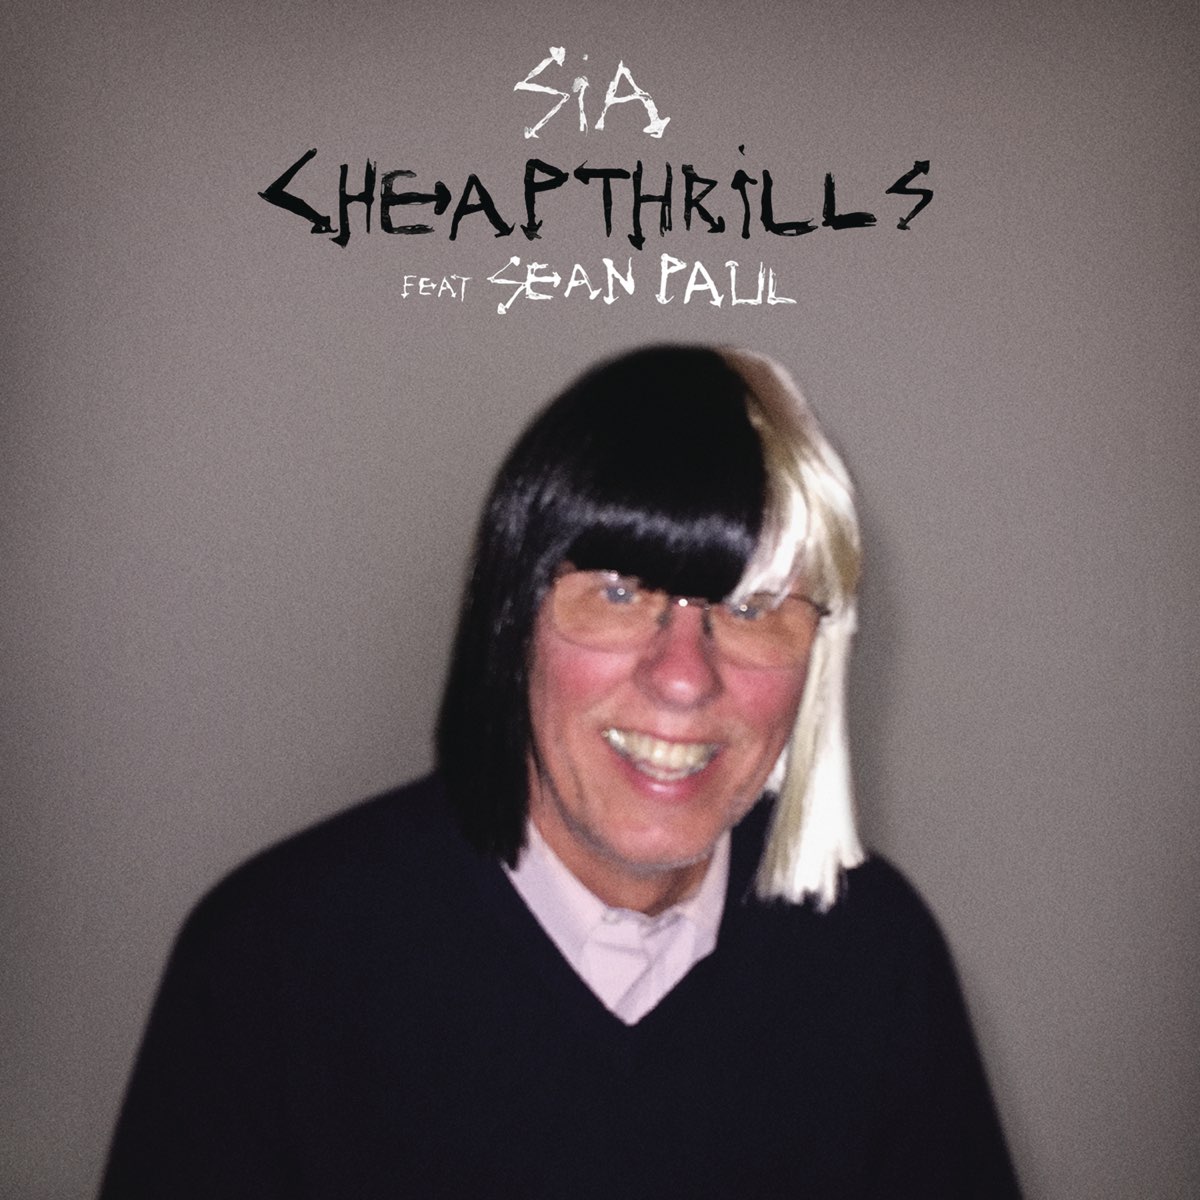 ‎Cheap Thrills (feat. Sean Paul) - Single - Album by Sia - Apple Music